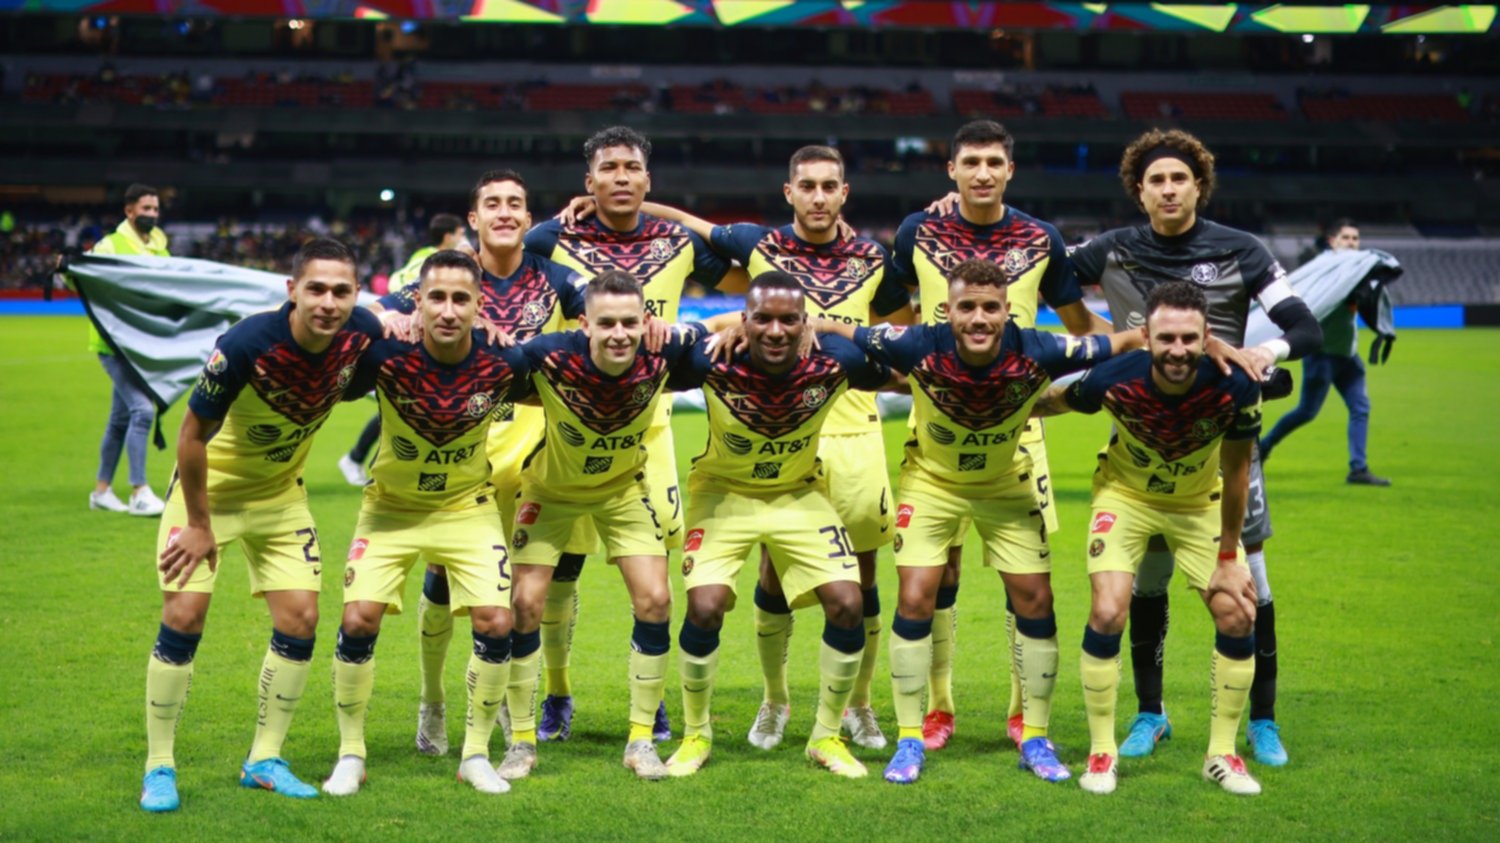 sorpresas que el Club América en equipo para su pendiente contra Mazatlán FC | Pasión Águila